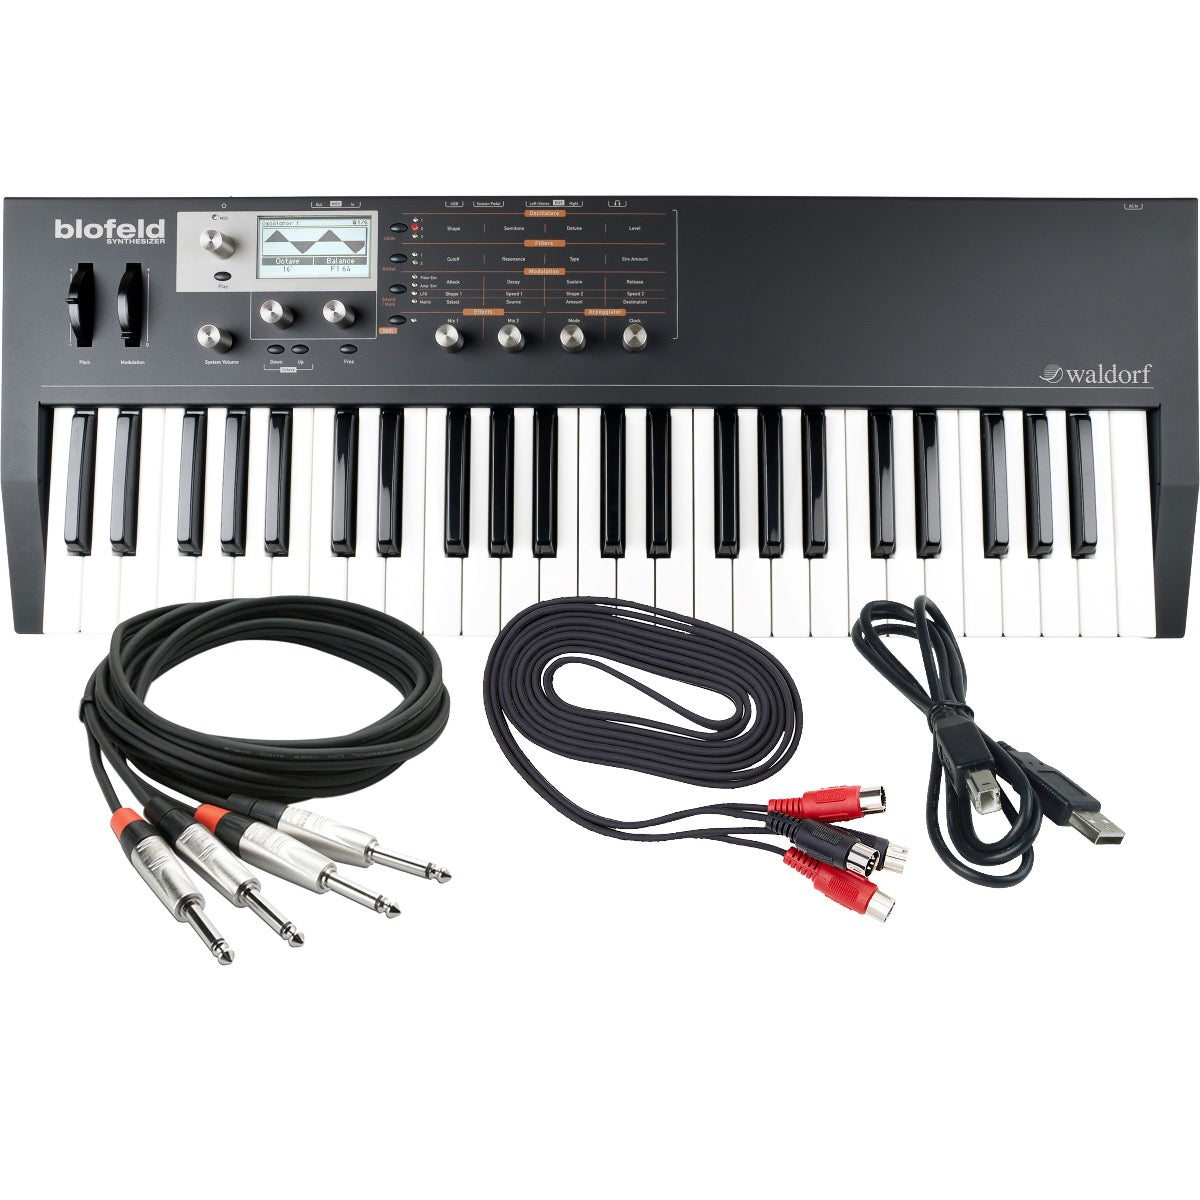 Waldorf Blofeld Keyboard Synthesizer - Black / Shadow Edition